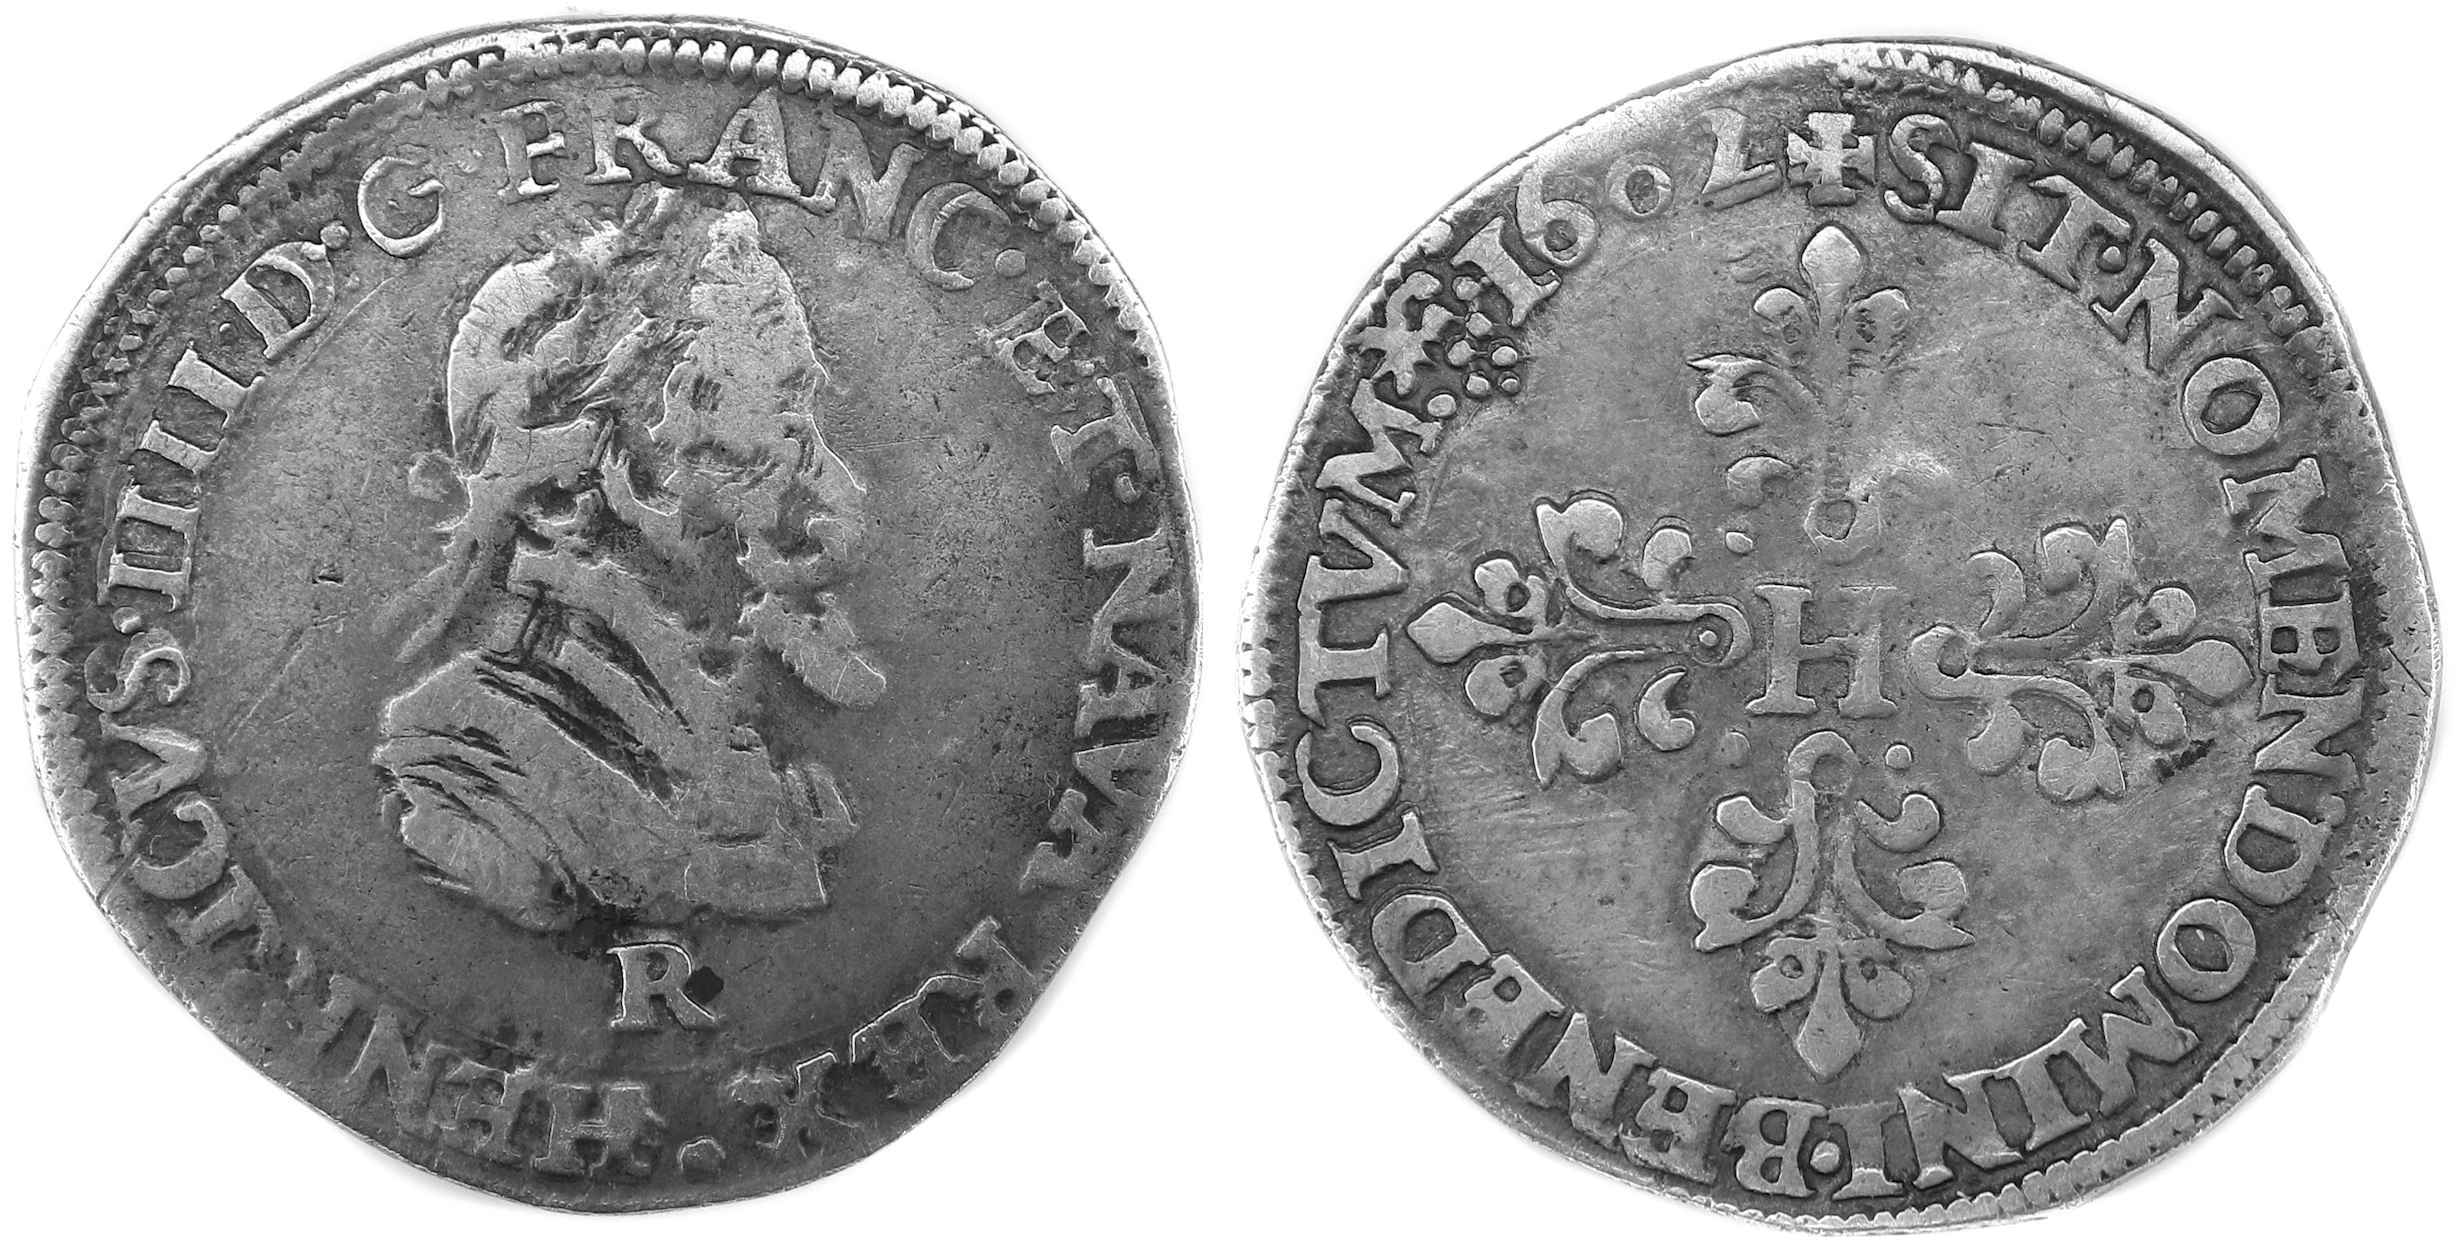 Monnaies royales francaise HENRI IV DEMI FRANC 1602 VILLENEUVE ST ANDRE